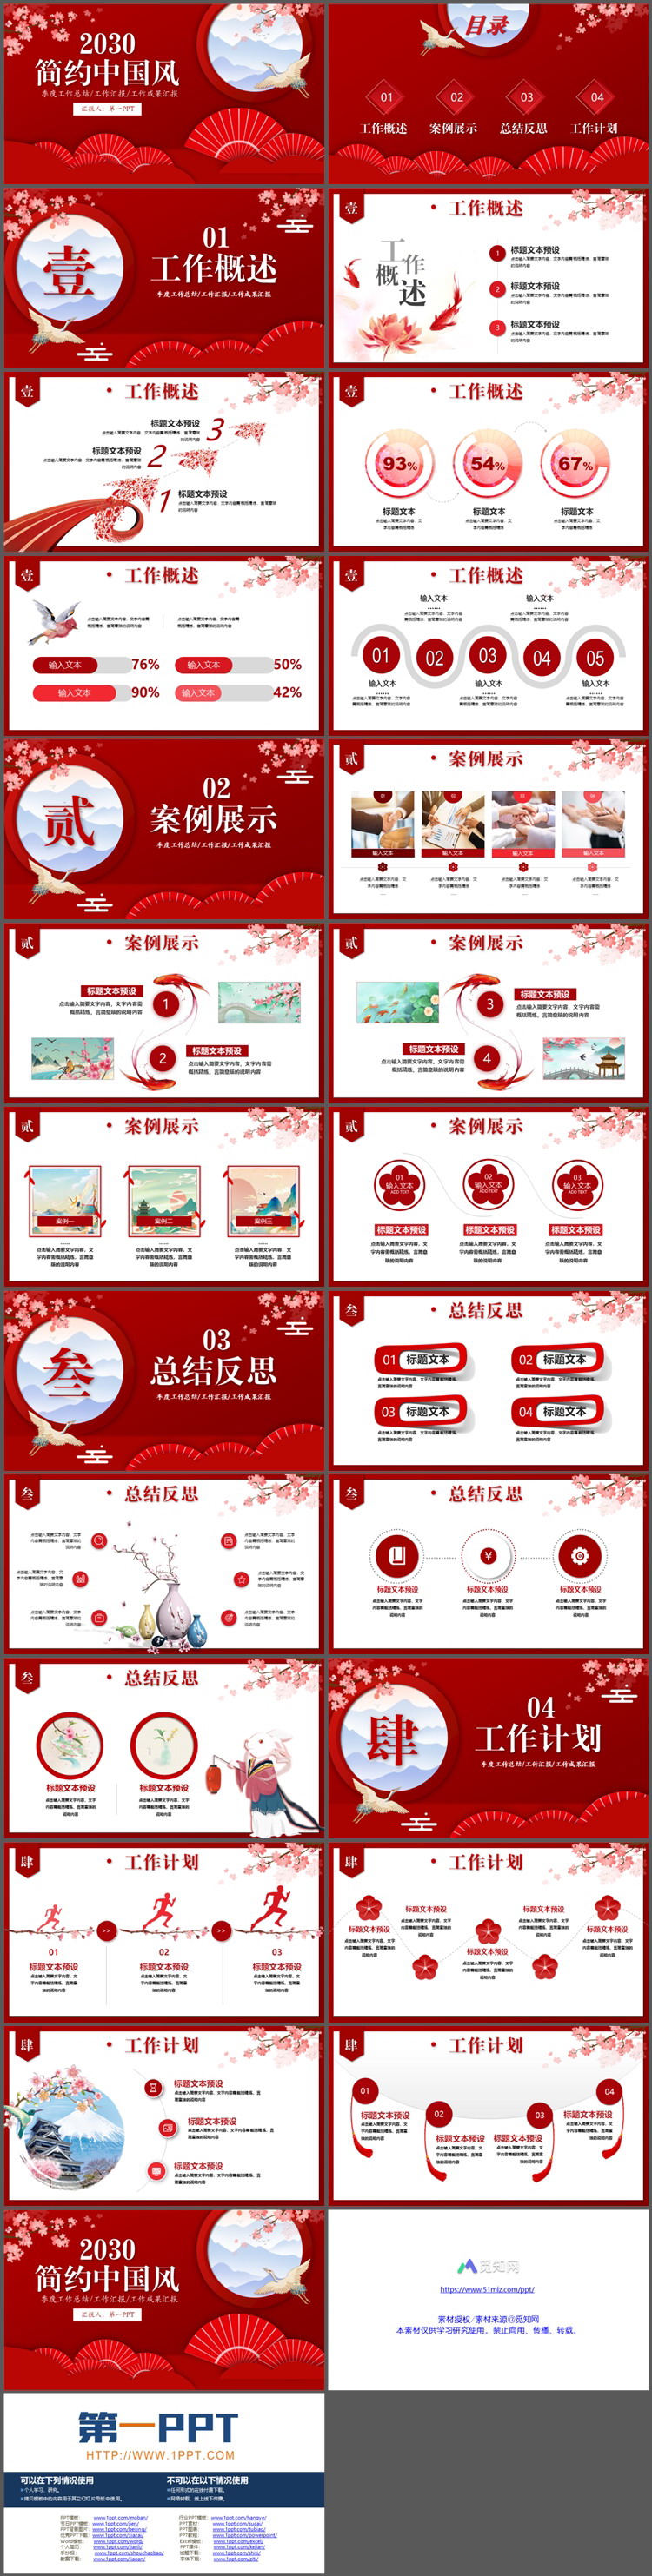 红色折扇梅花仙鹤背景的中国风总结汇报PPT模板